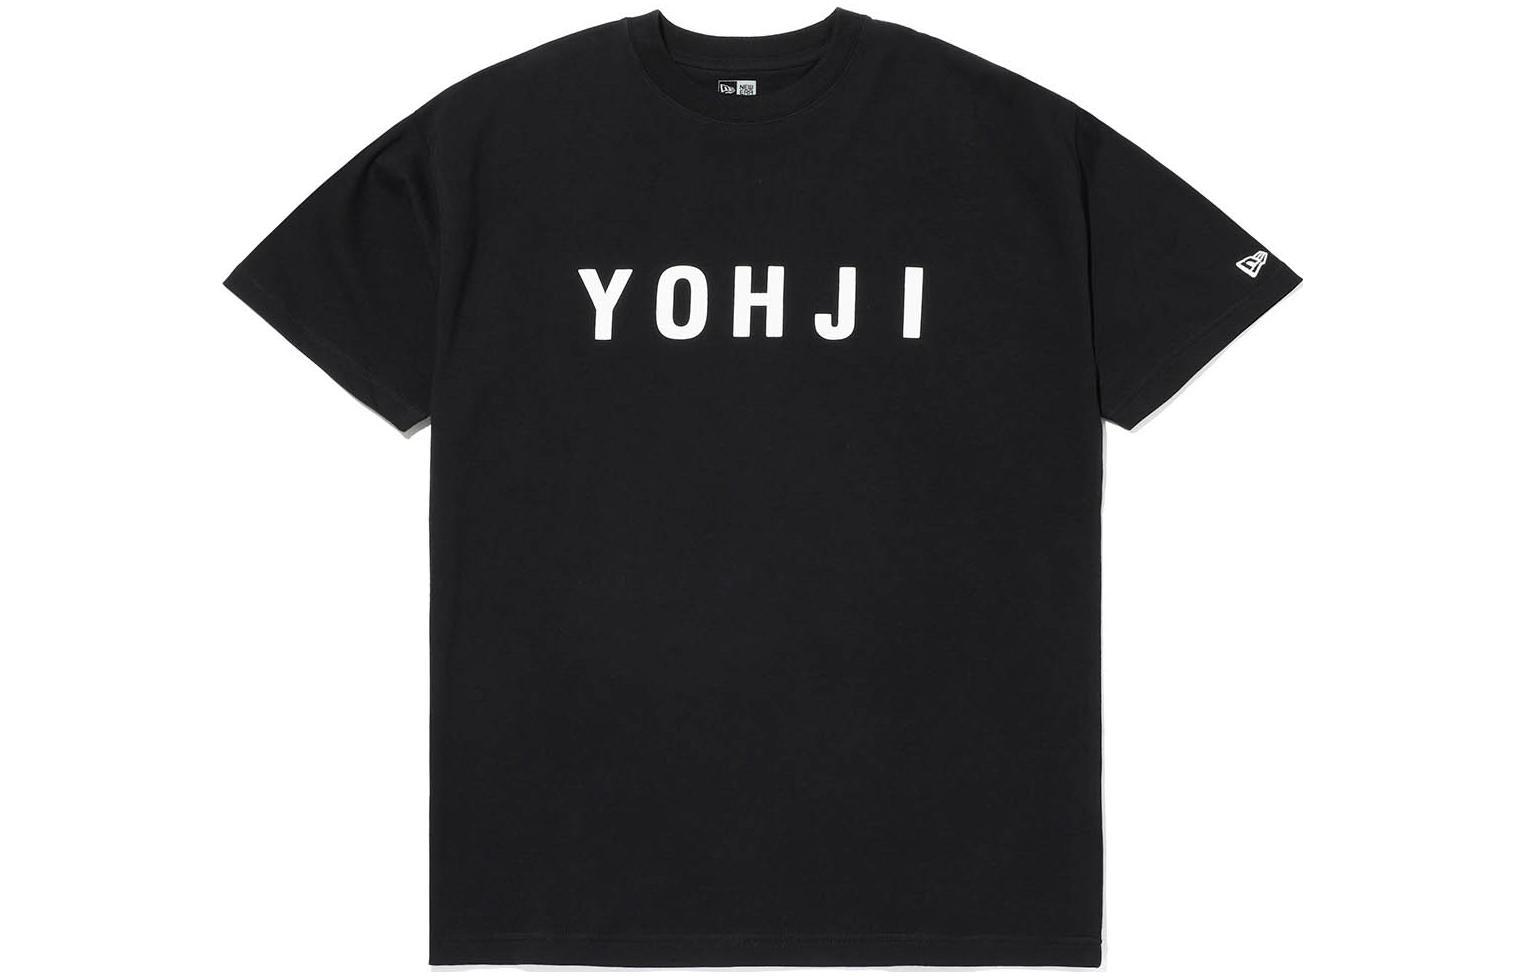 Yohji Yamamoto x New Era Yohji Yamamoto x New Era SS22 LogoT